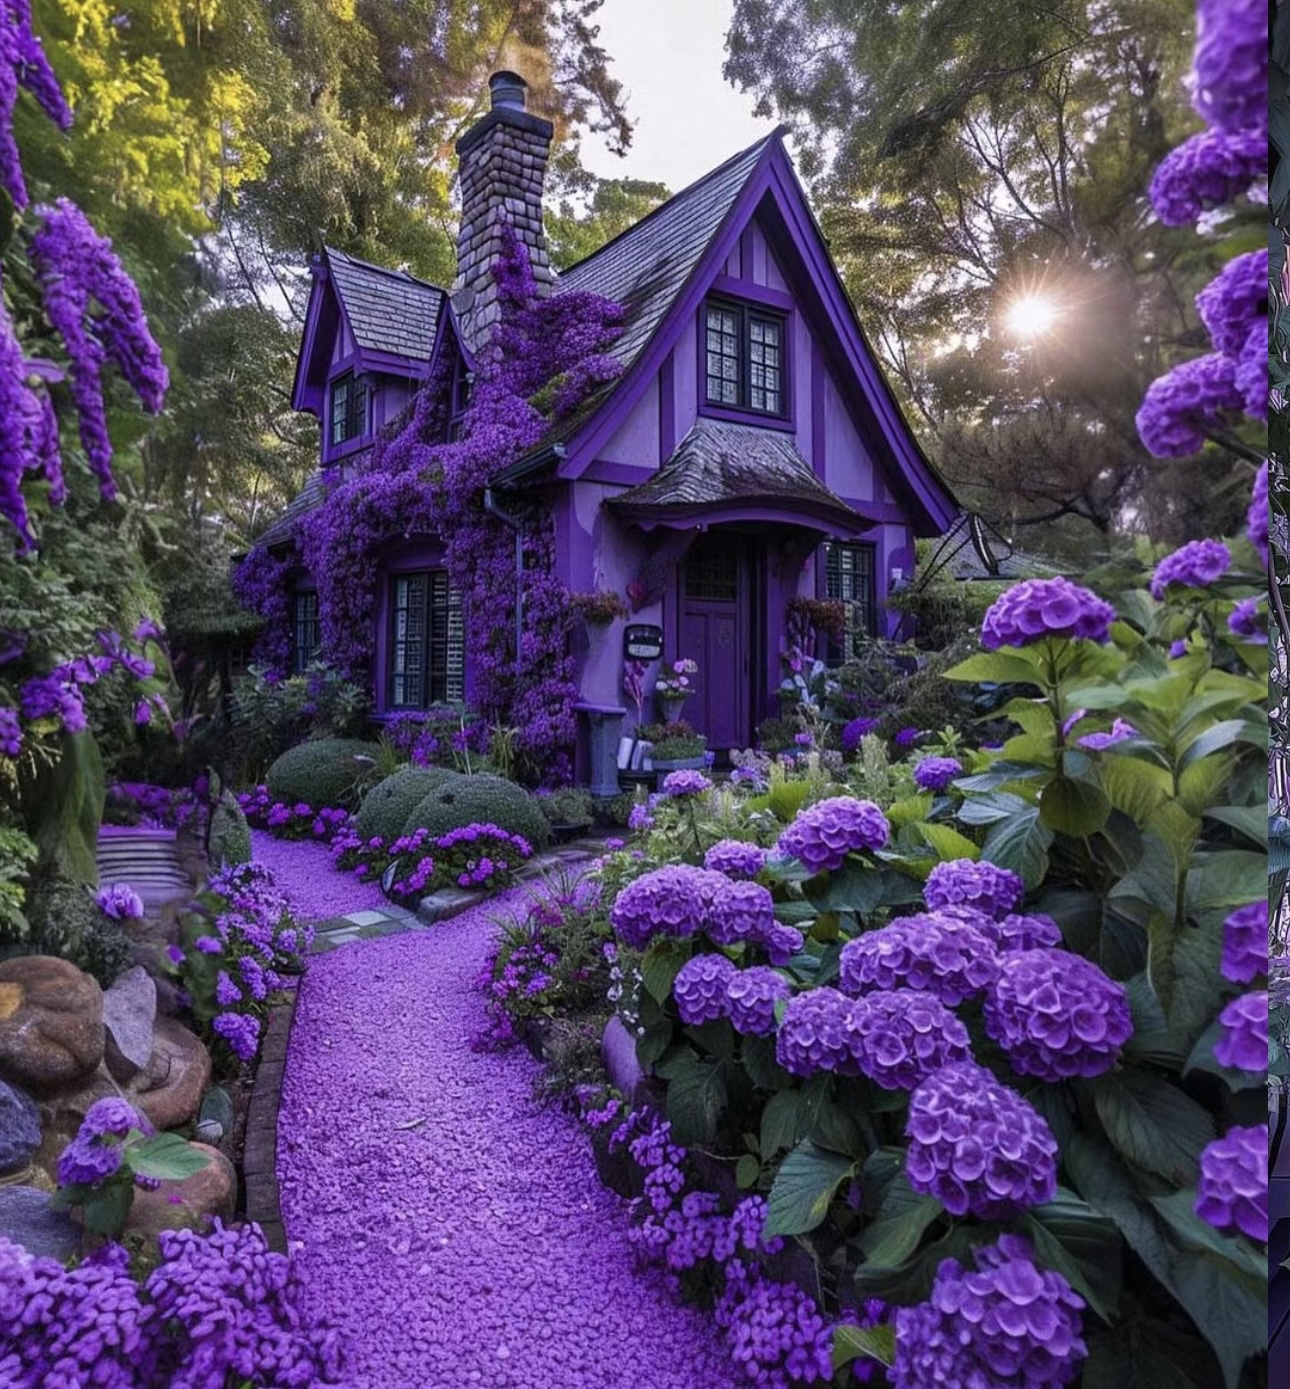 公主的神秘城堡 “在这个异想天开的紫色天堂里，拥抱薰衣草梦的魅力吧。这座城堡里，每一片树荫都伴随着宁